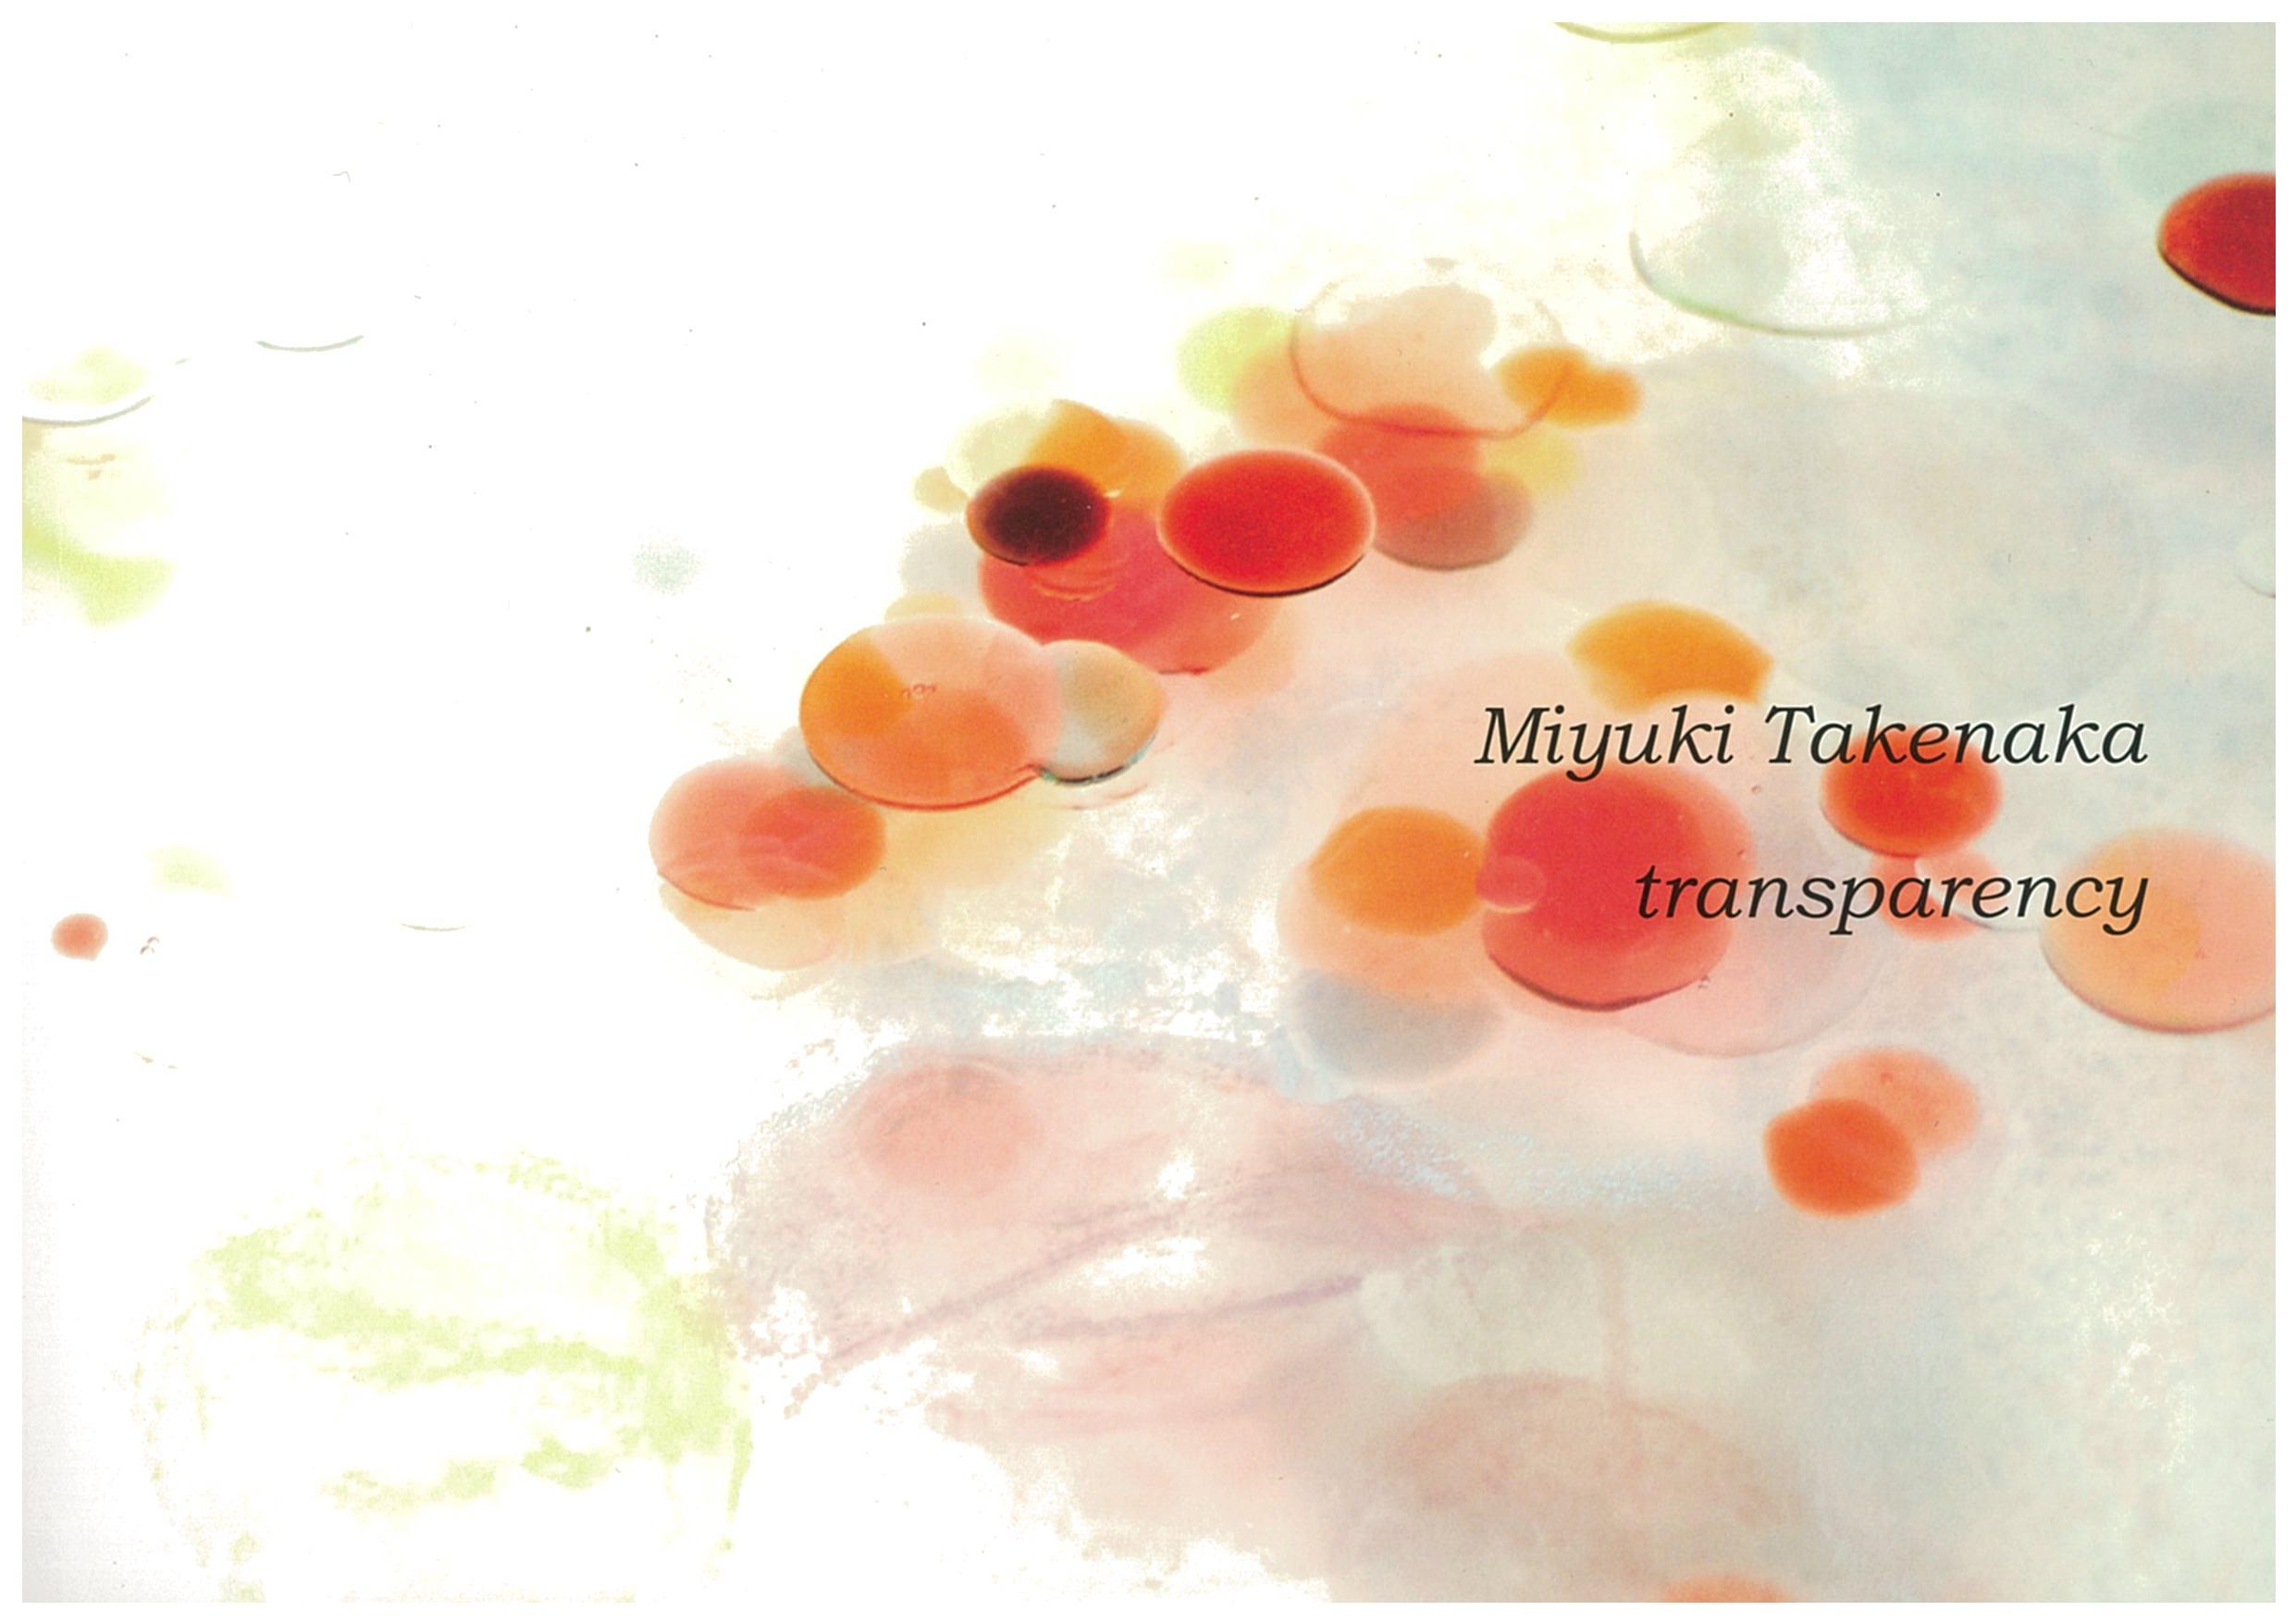 Transparency: Miyuki Takenaka